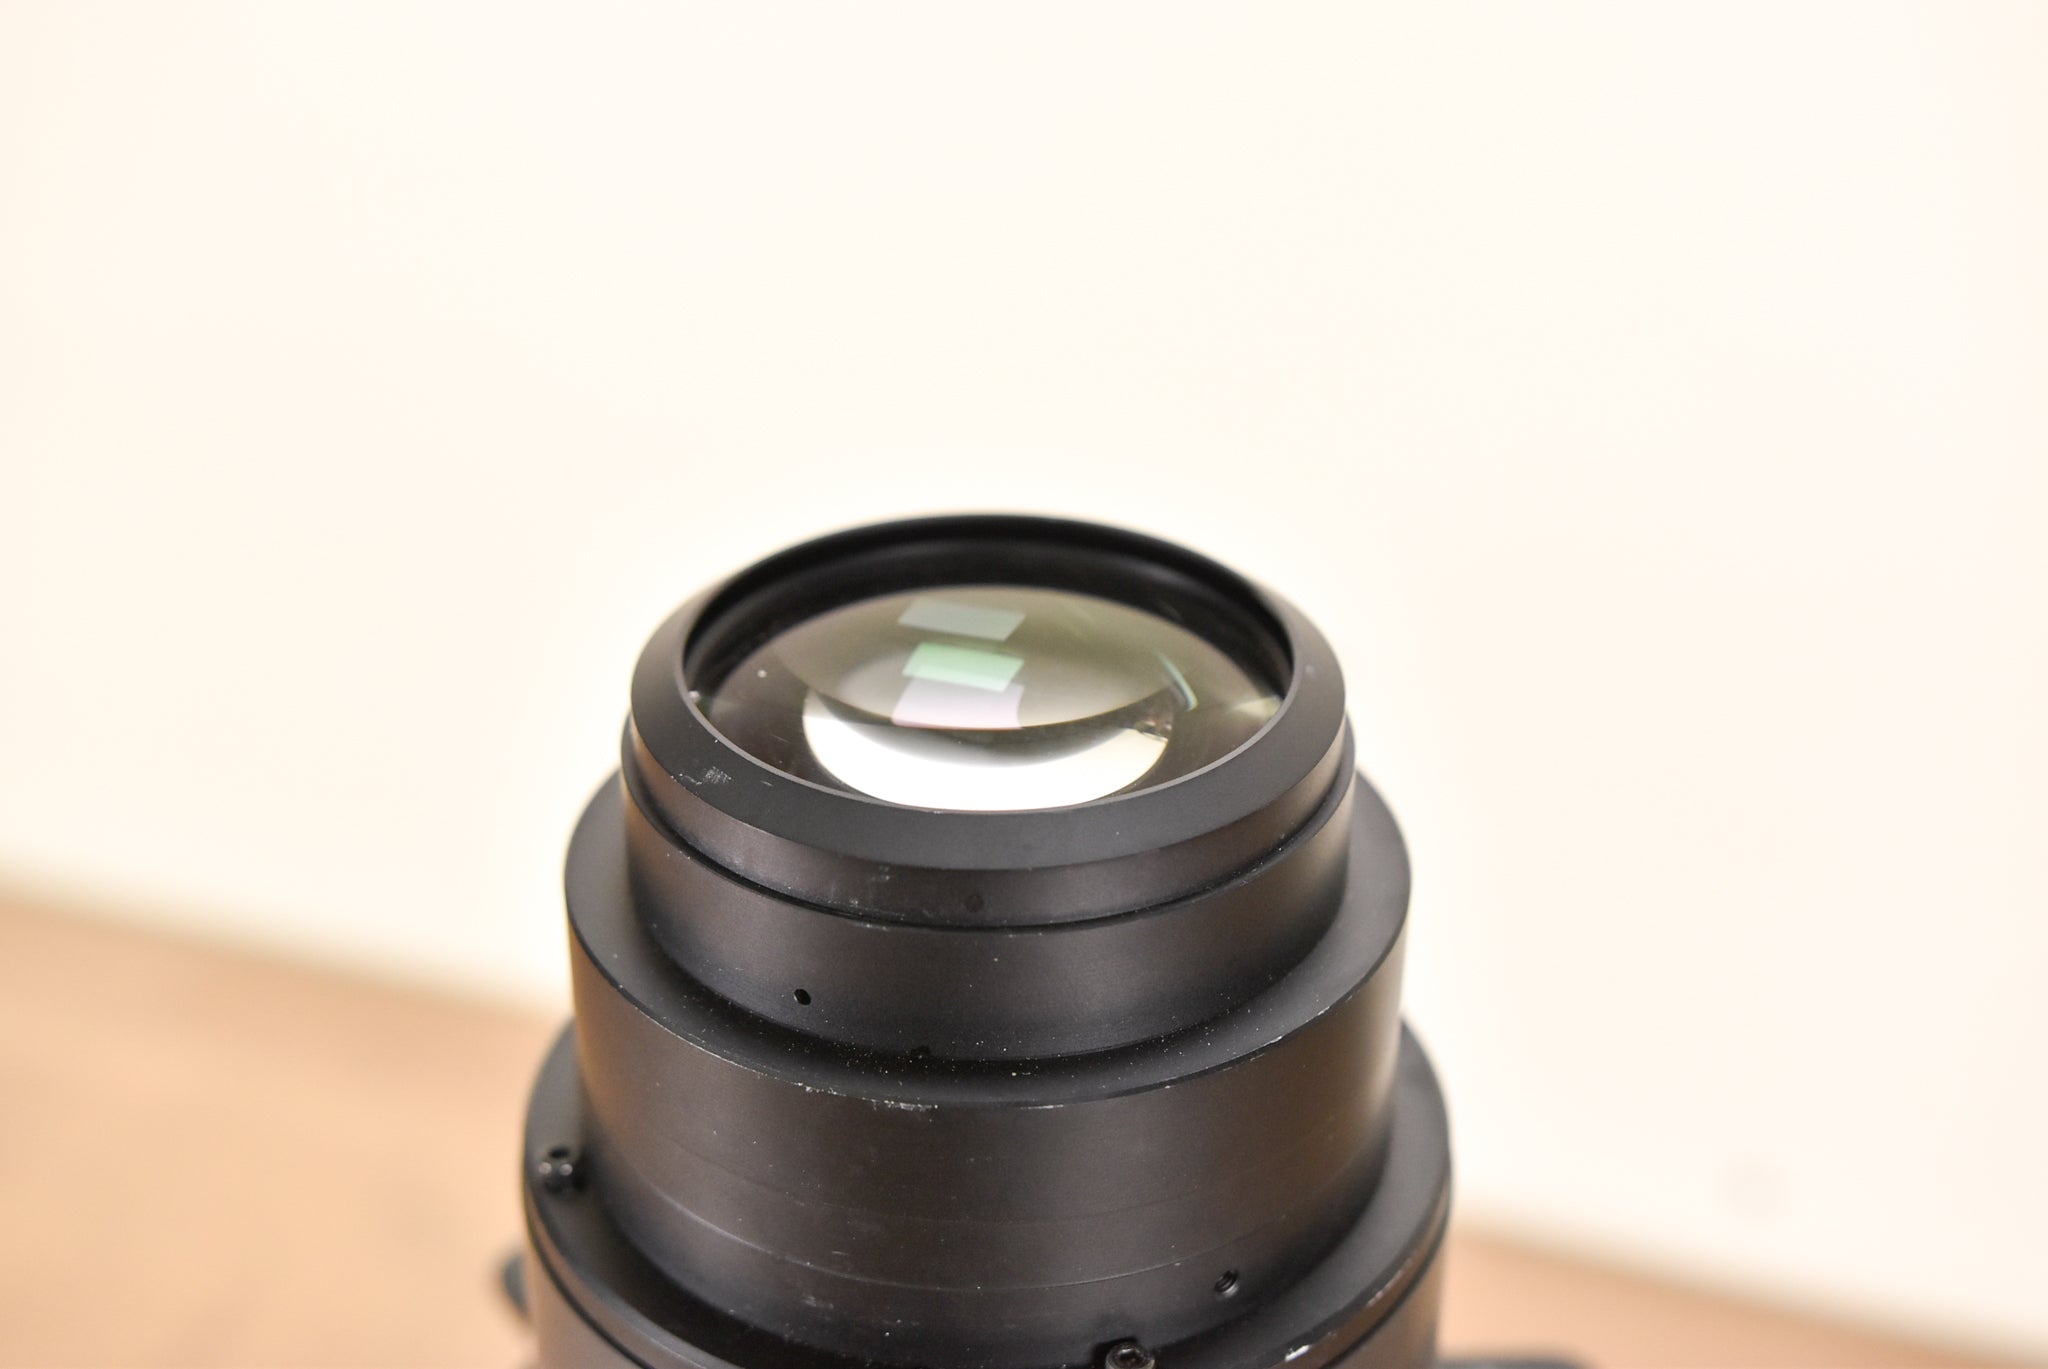 Christie ILS Lens 1.4-1.8:1 HD 0.95" 3-Chip DLP Projector Lens